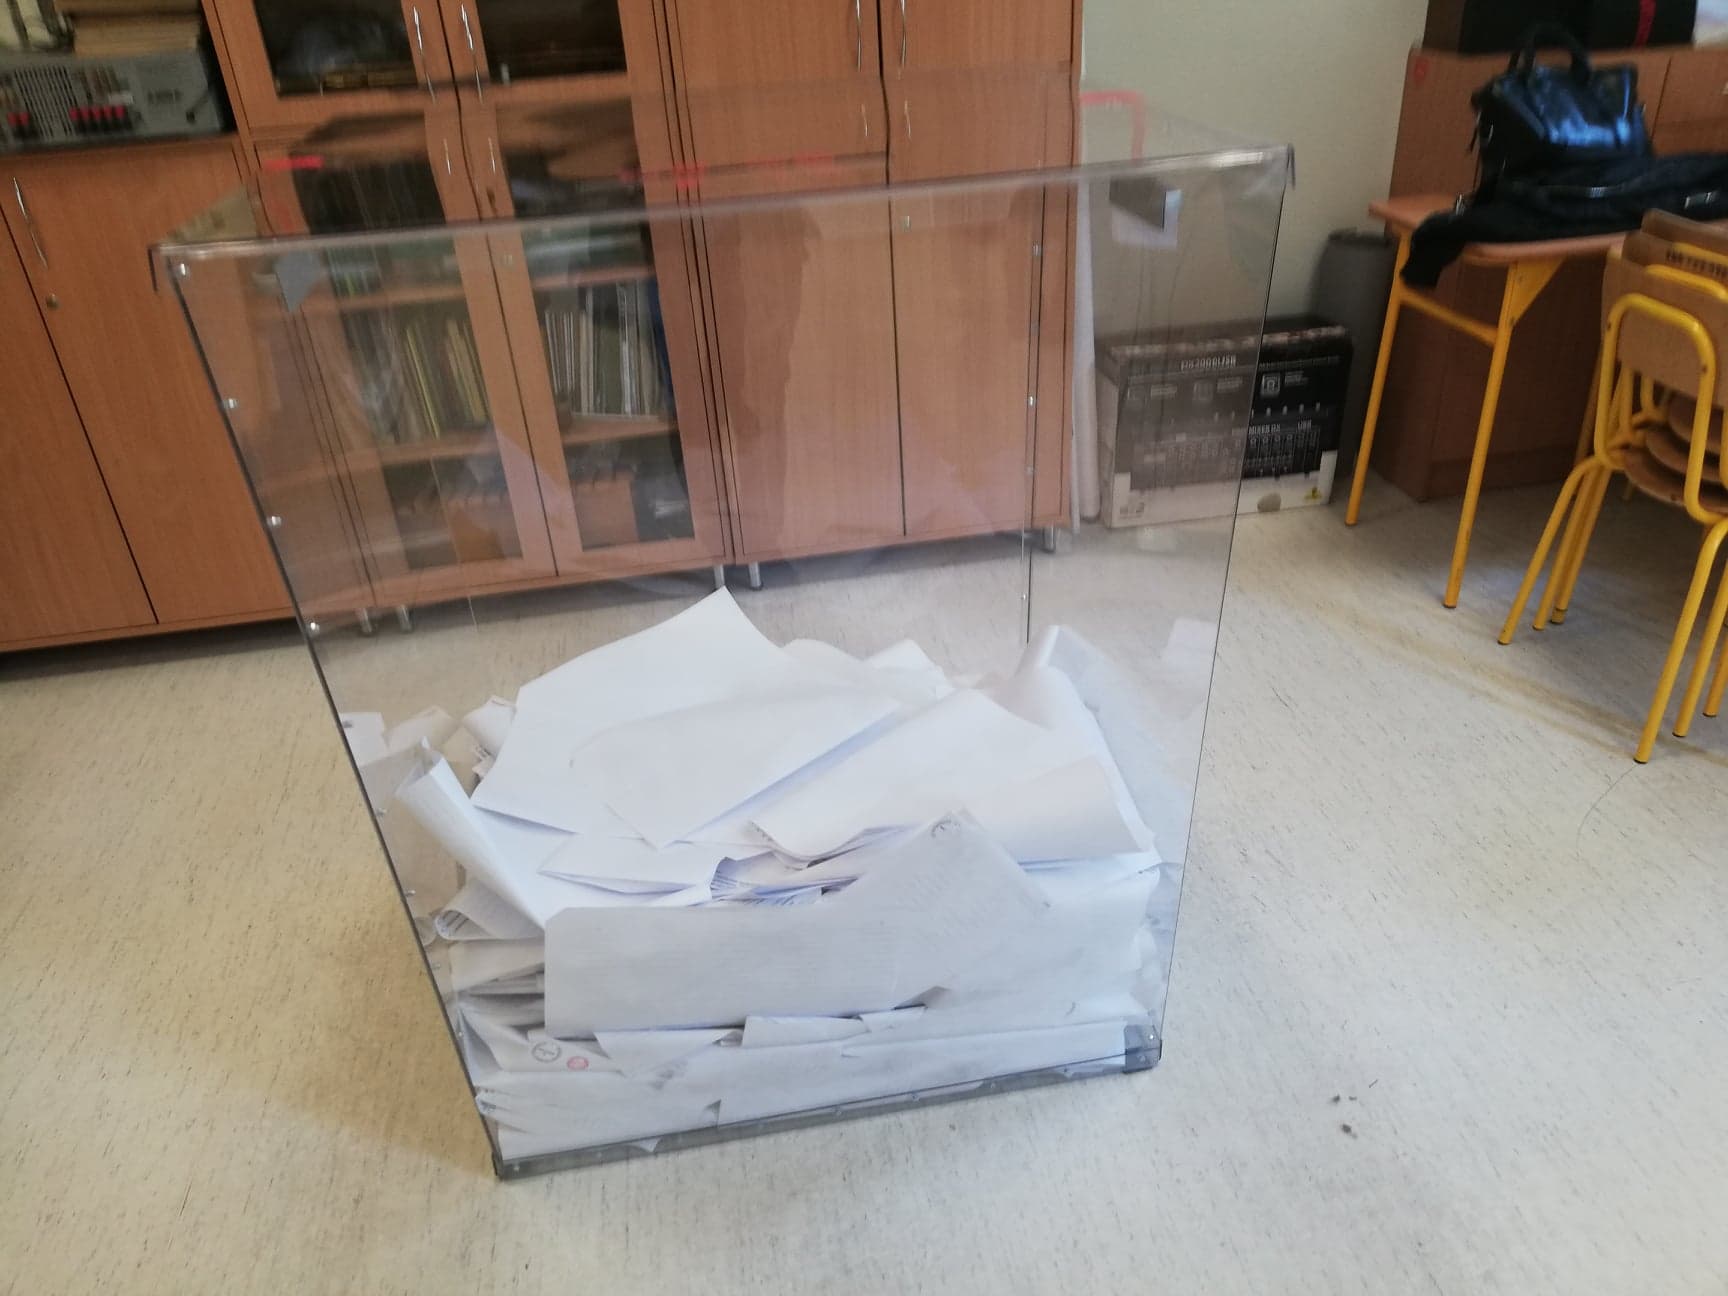 [WYBORY 2019] Wyniki dla Podkarpacia z 95% komisji wyborczych OKRĘG 23 i 22 - Zdjęcie główne